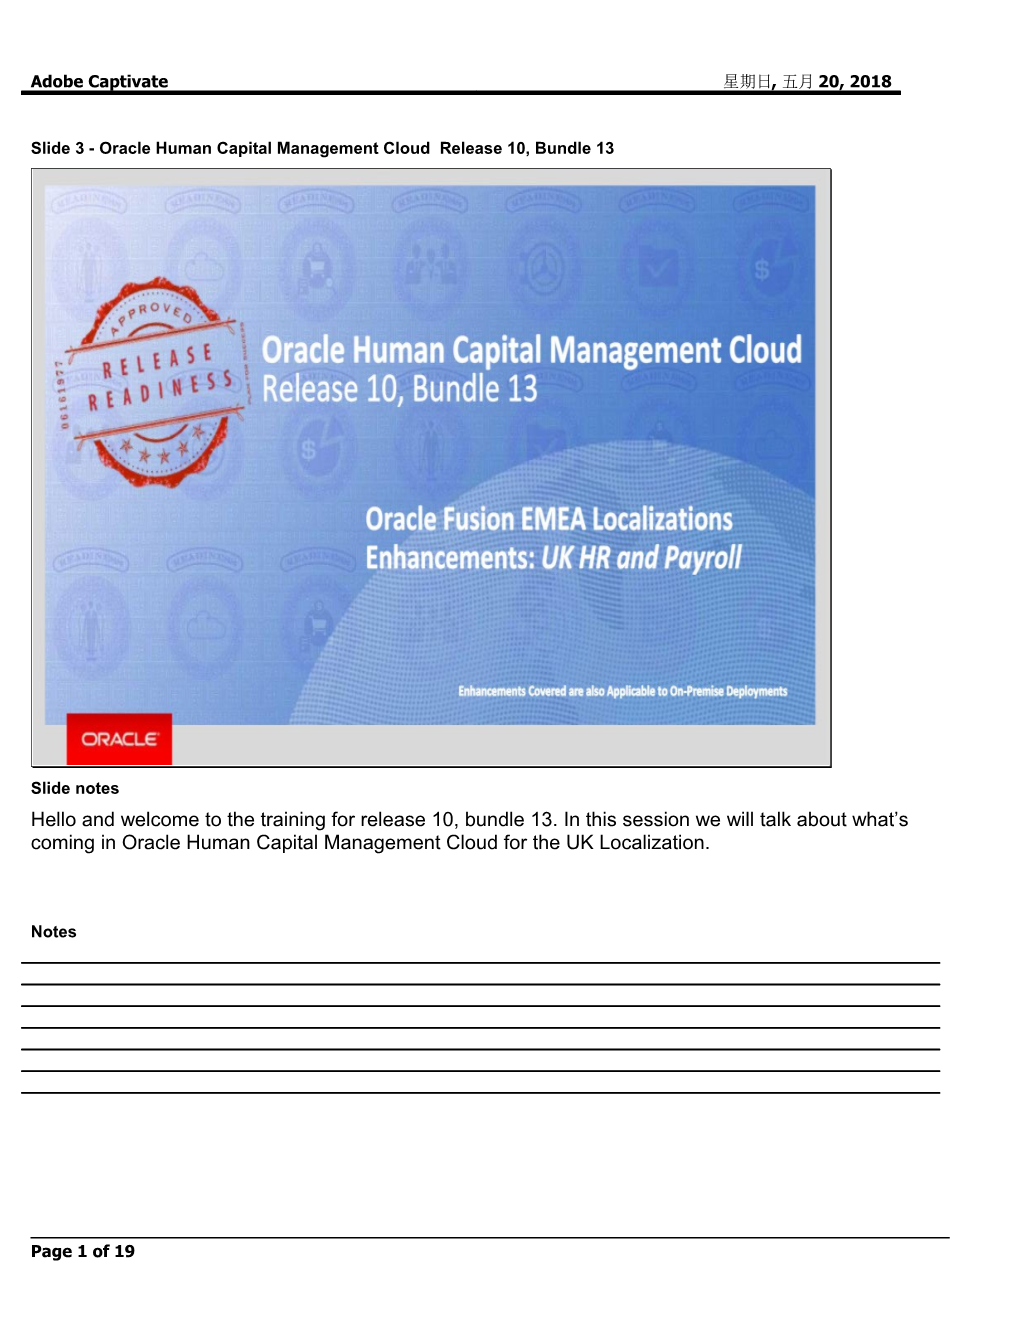 Slide 3 - Oracle Human Capital Management Cloud Release 10, Bundle 13